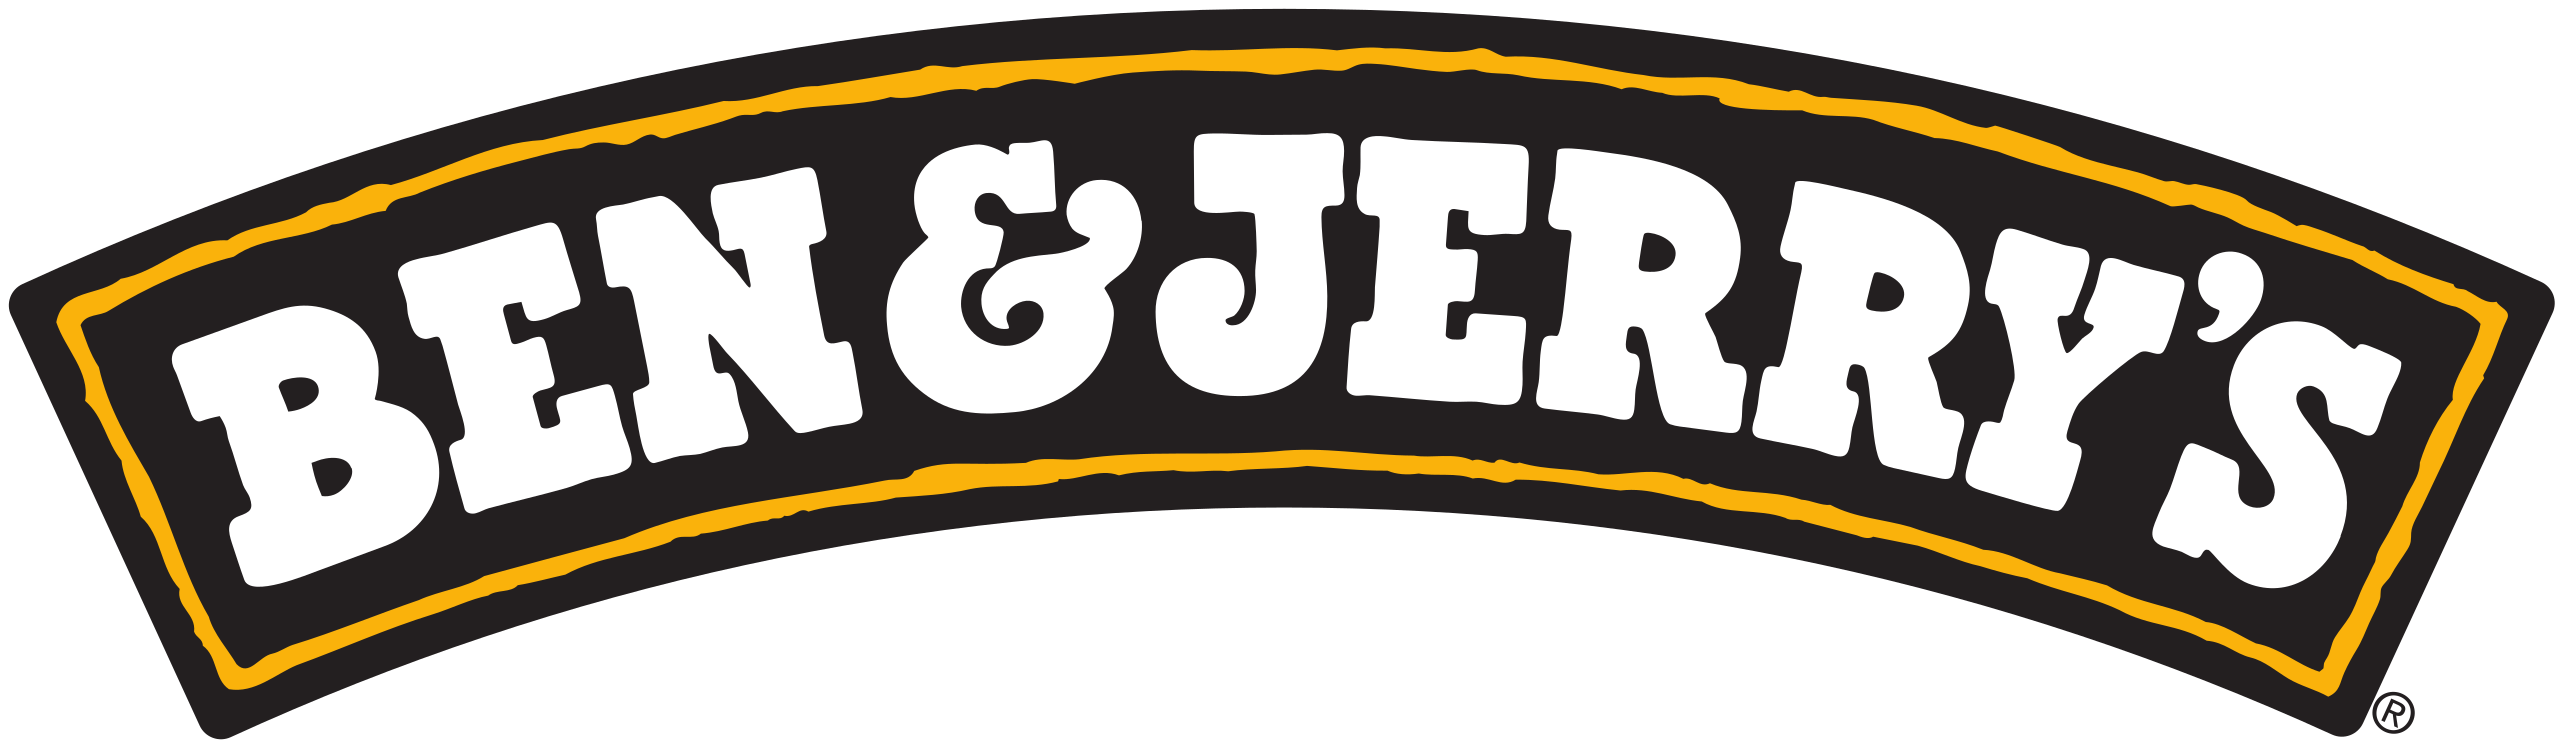 Ben & Jerry's Ice Cream Vermont